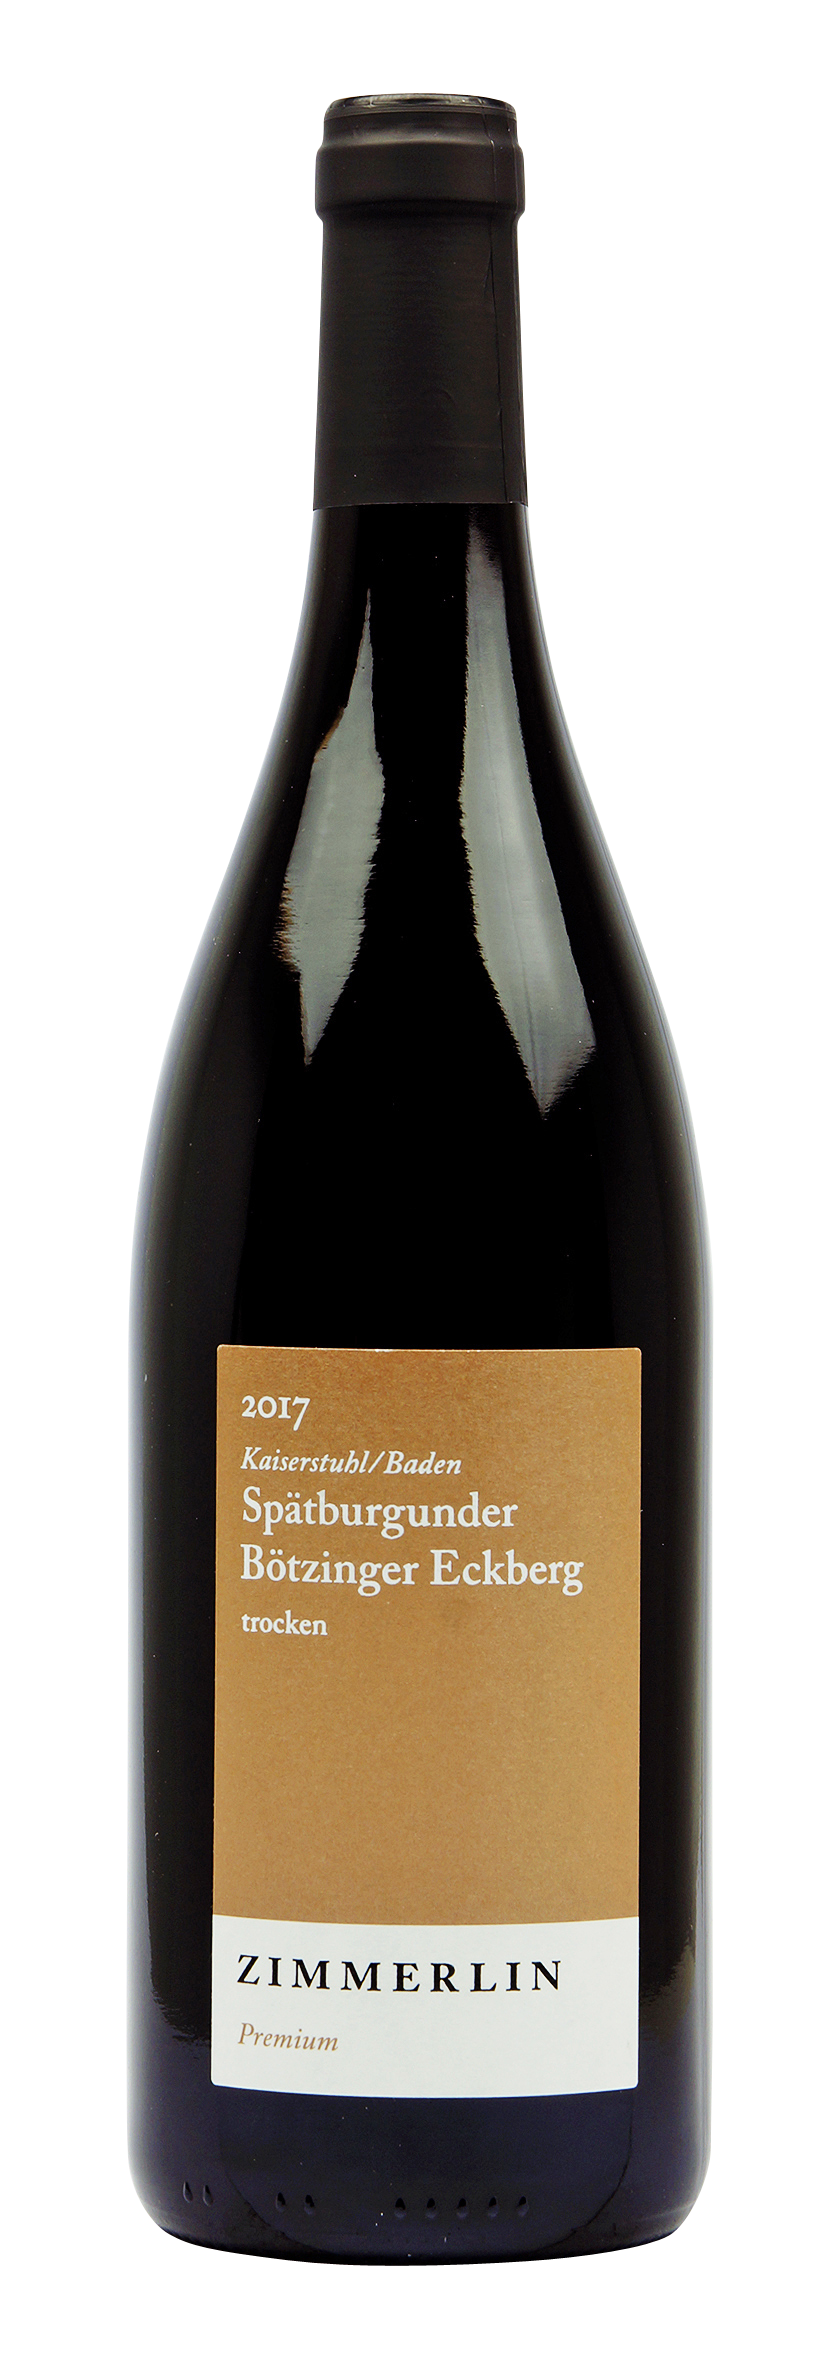 Bötzinger Eckberg Spätburgunder Premium 2017